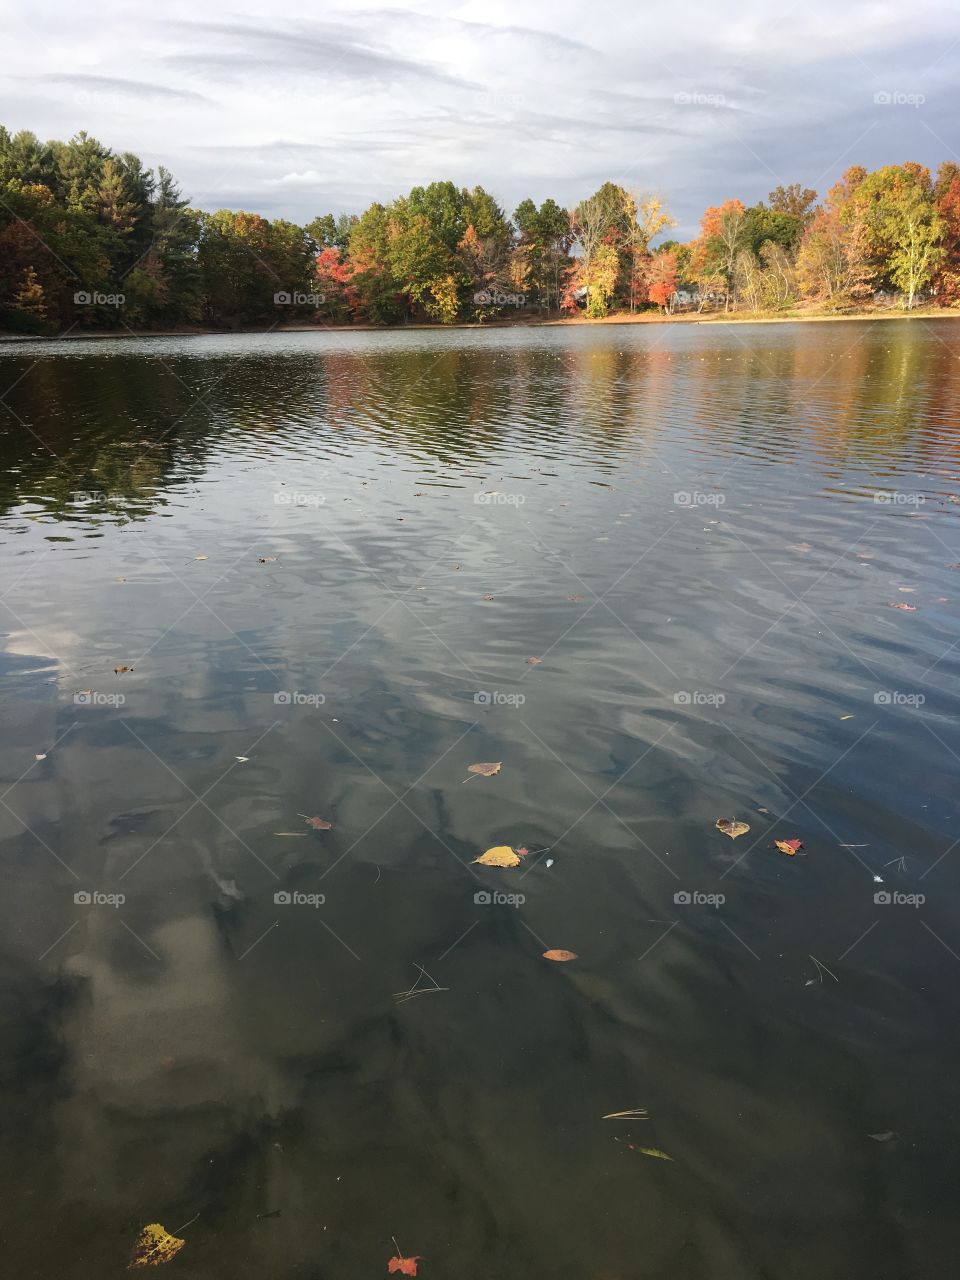 Paderewski Pond this fall